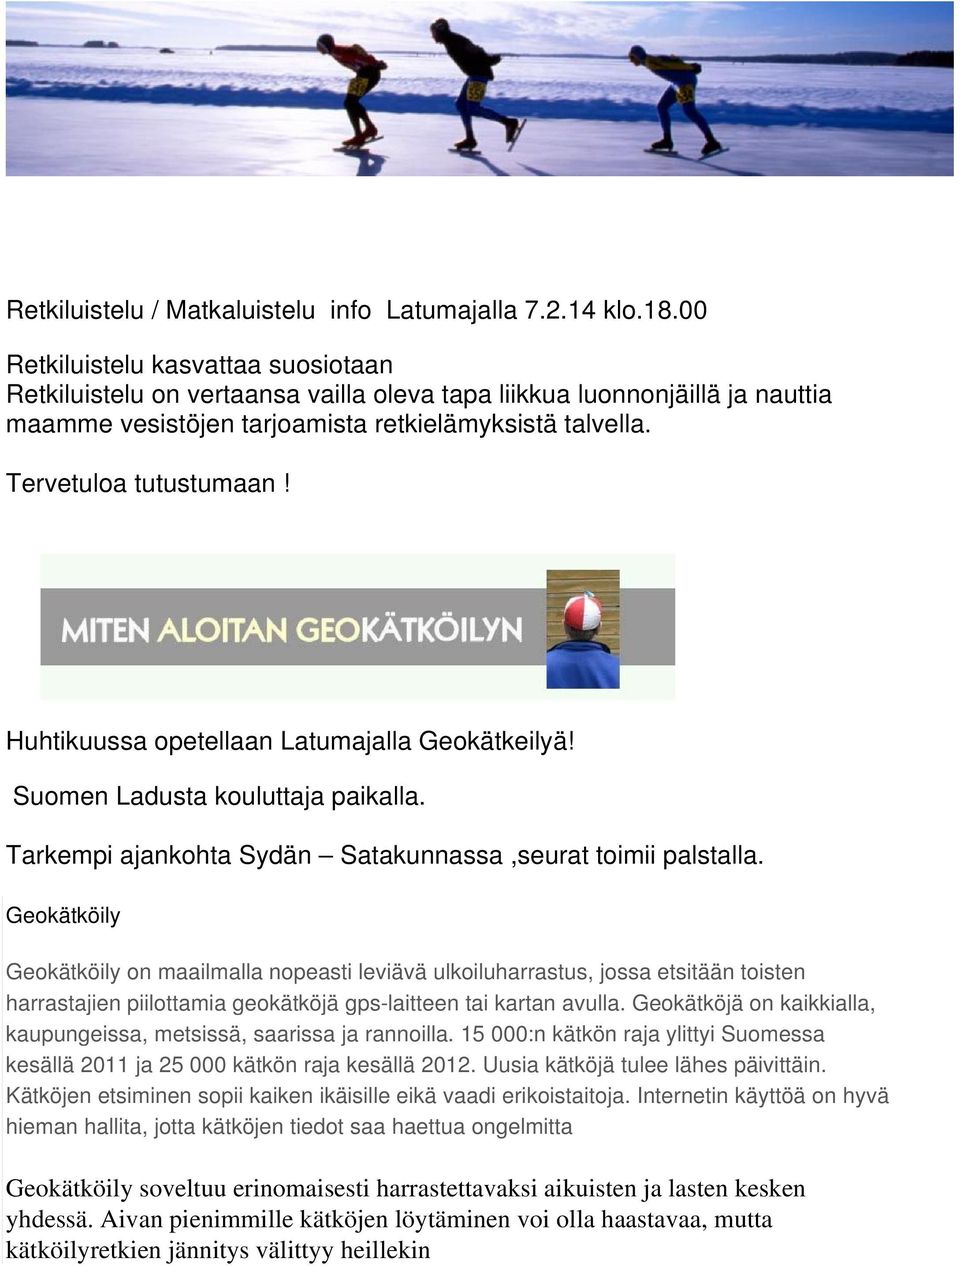 Huhtikuussa opetellaan Latumajalla Geokätkeilyä! Suomen Ladusta kouluttaja paikalla. Tarkempi ajankohta Sydän Satakunnassa,seurat toimii palstalla.